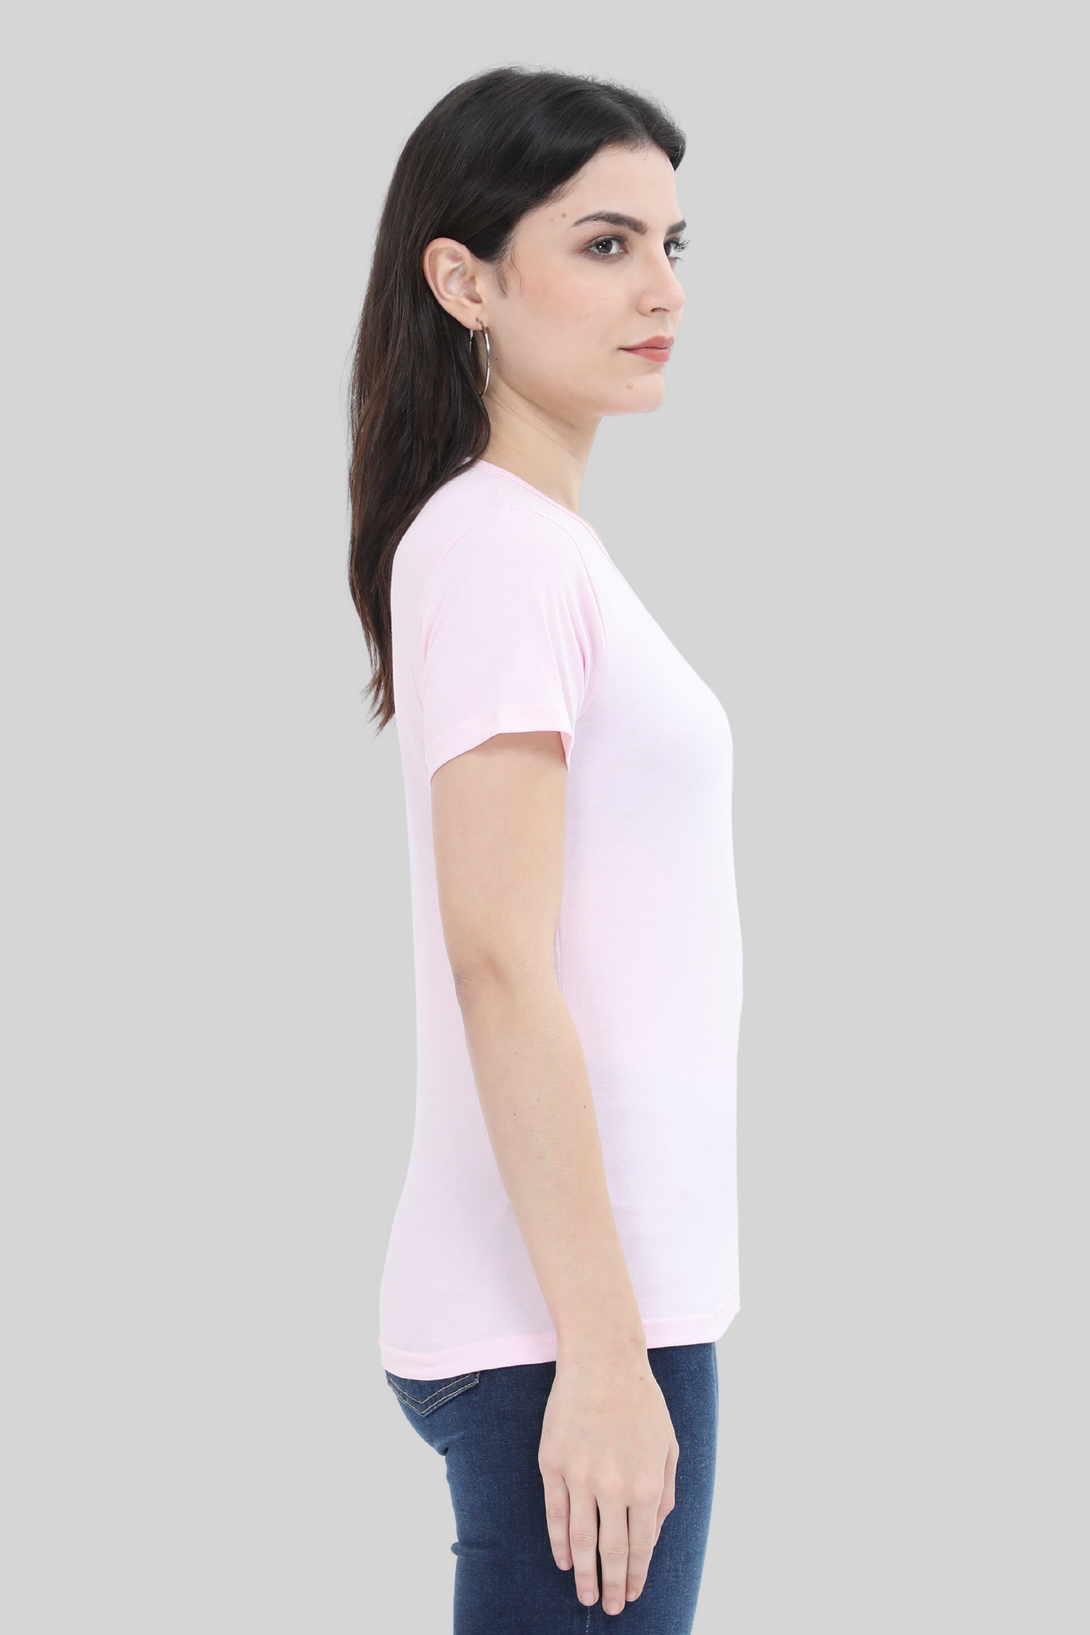 Light Pink Scoop Neck T-Shirt For Women - WowWaves - 2